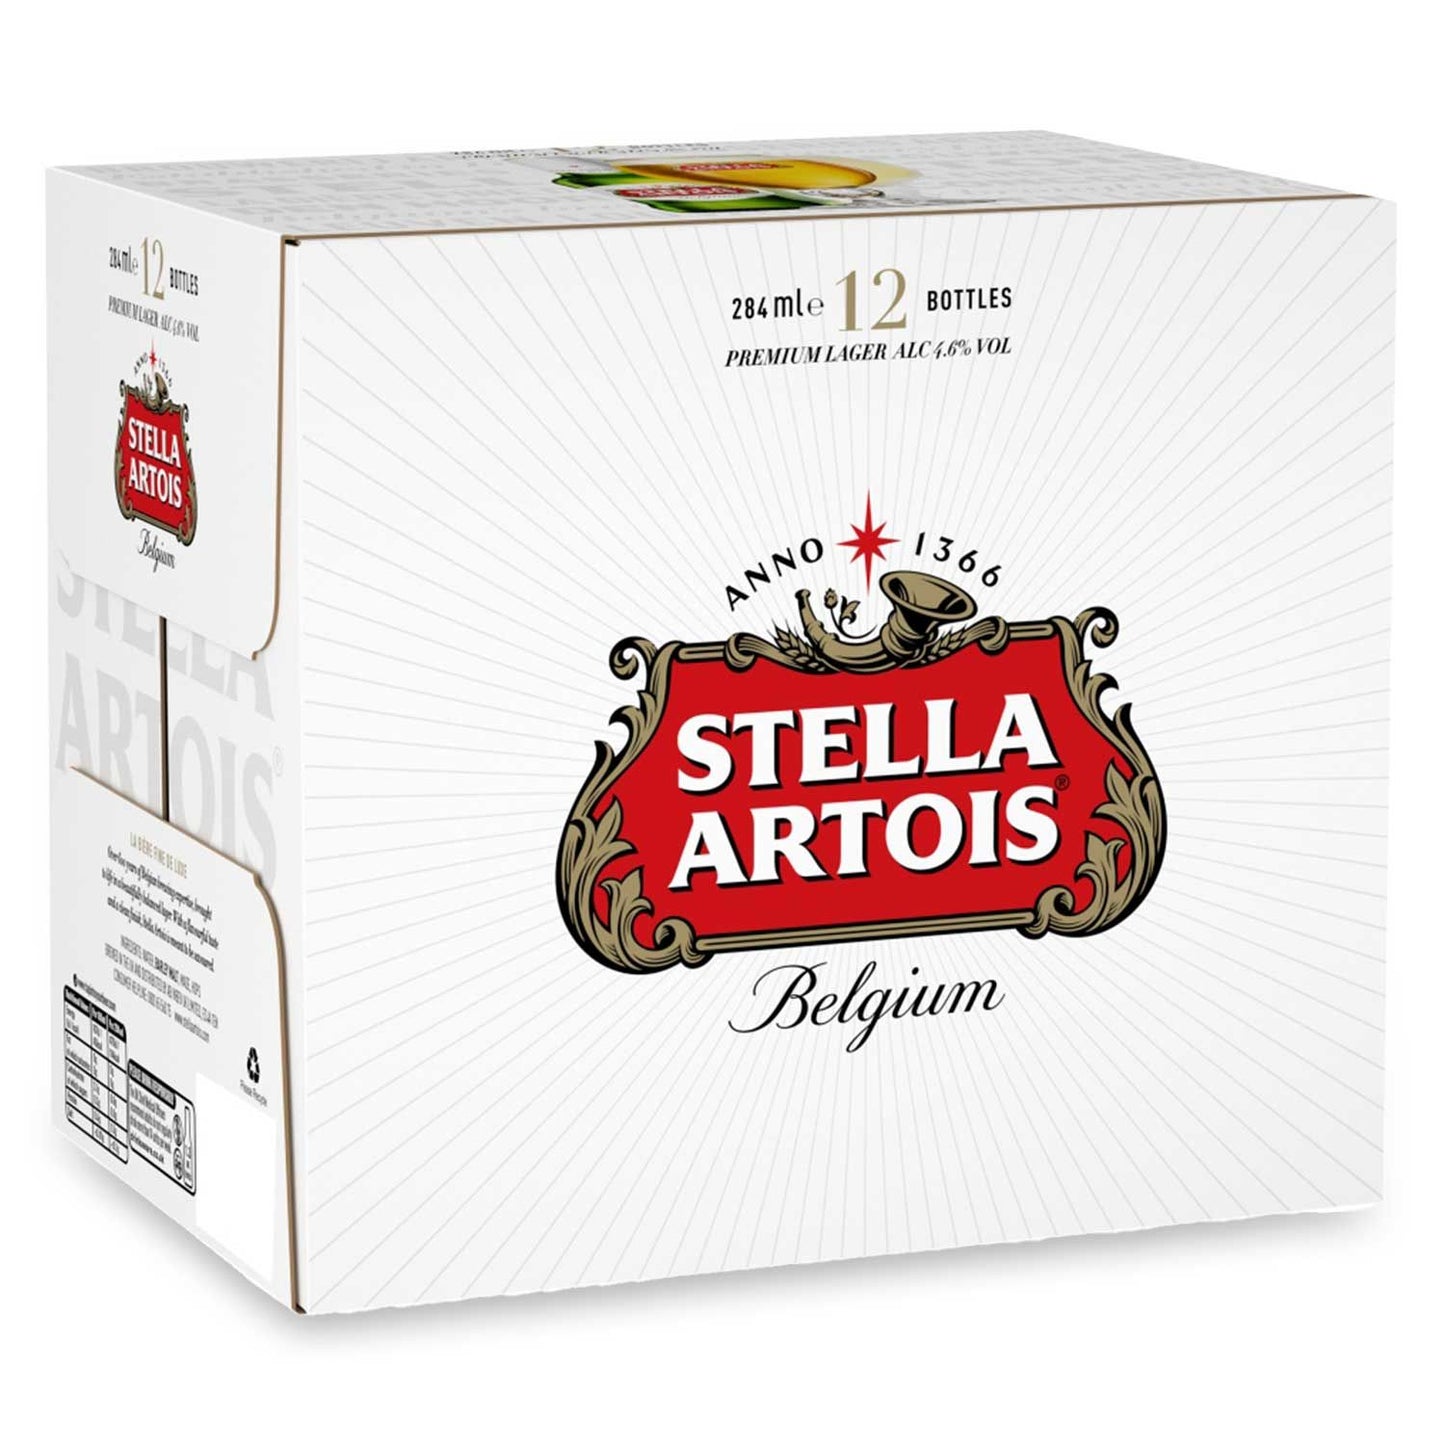 Stella Artois Belgium Premium Lager 12x284ml